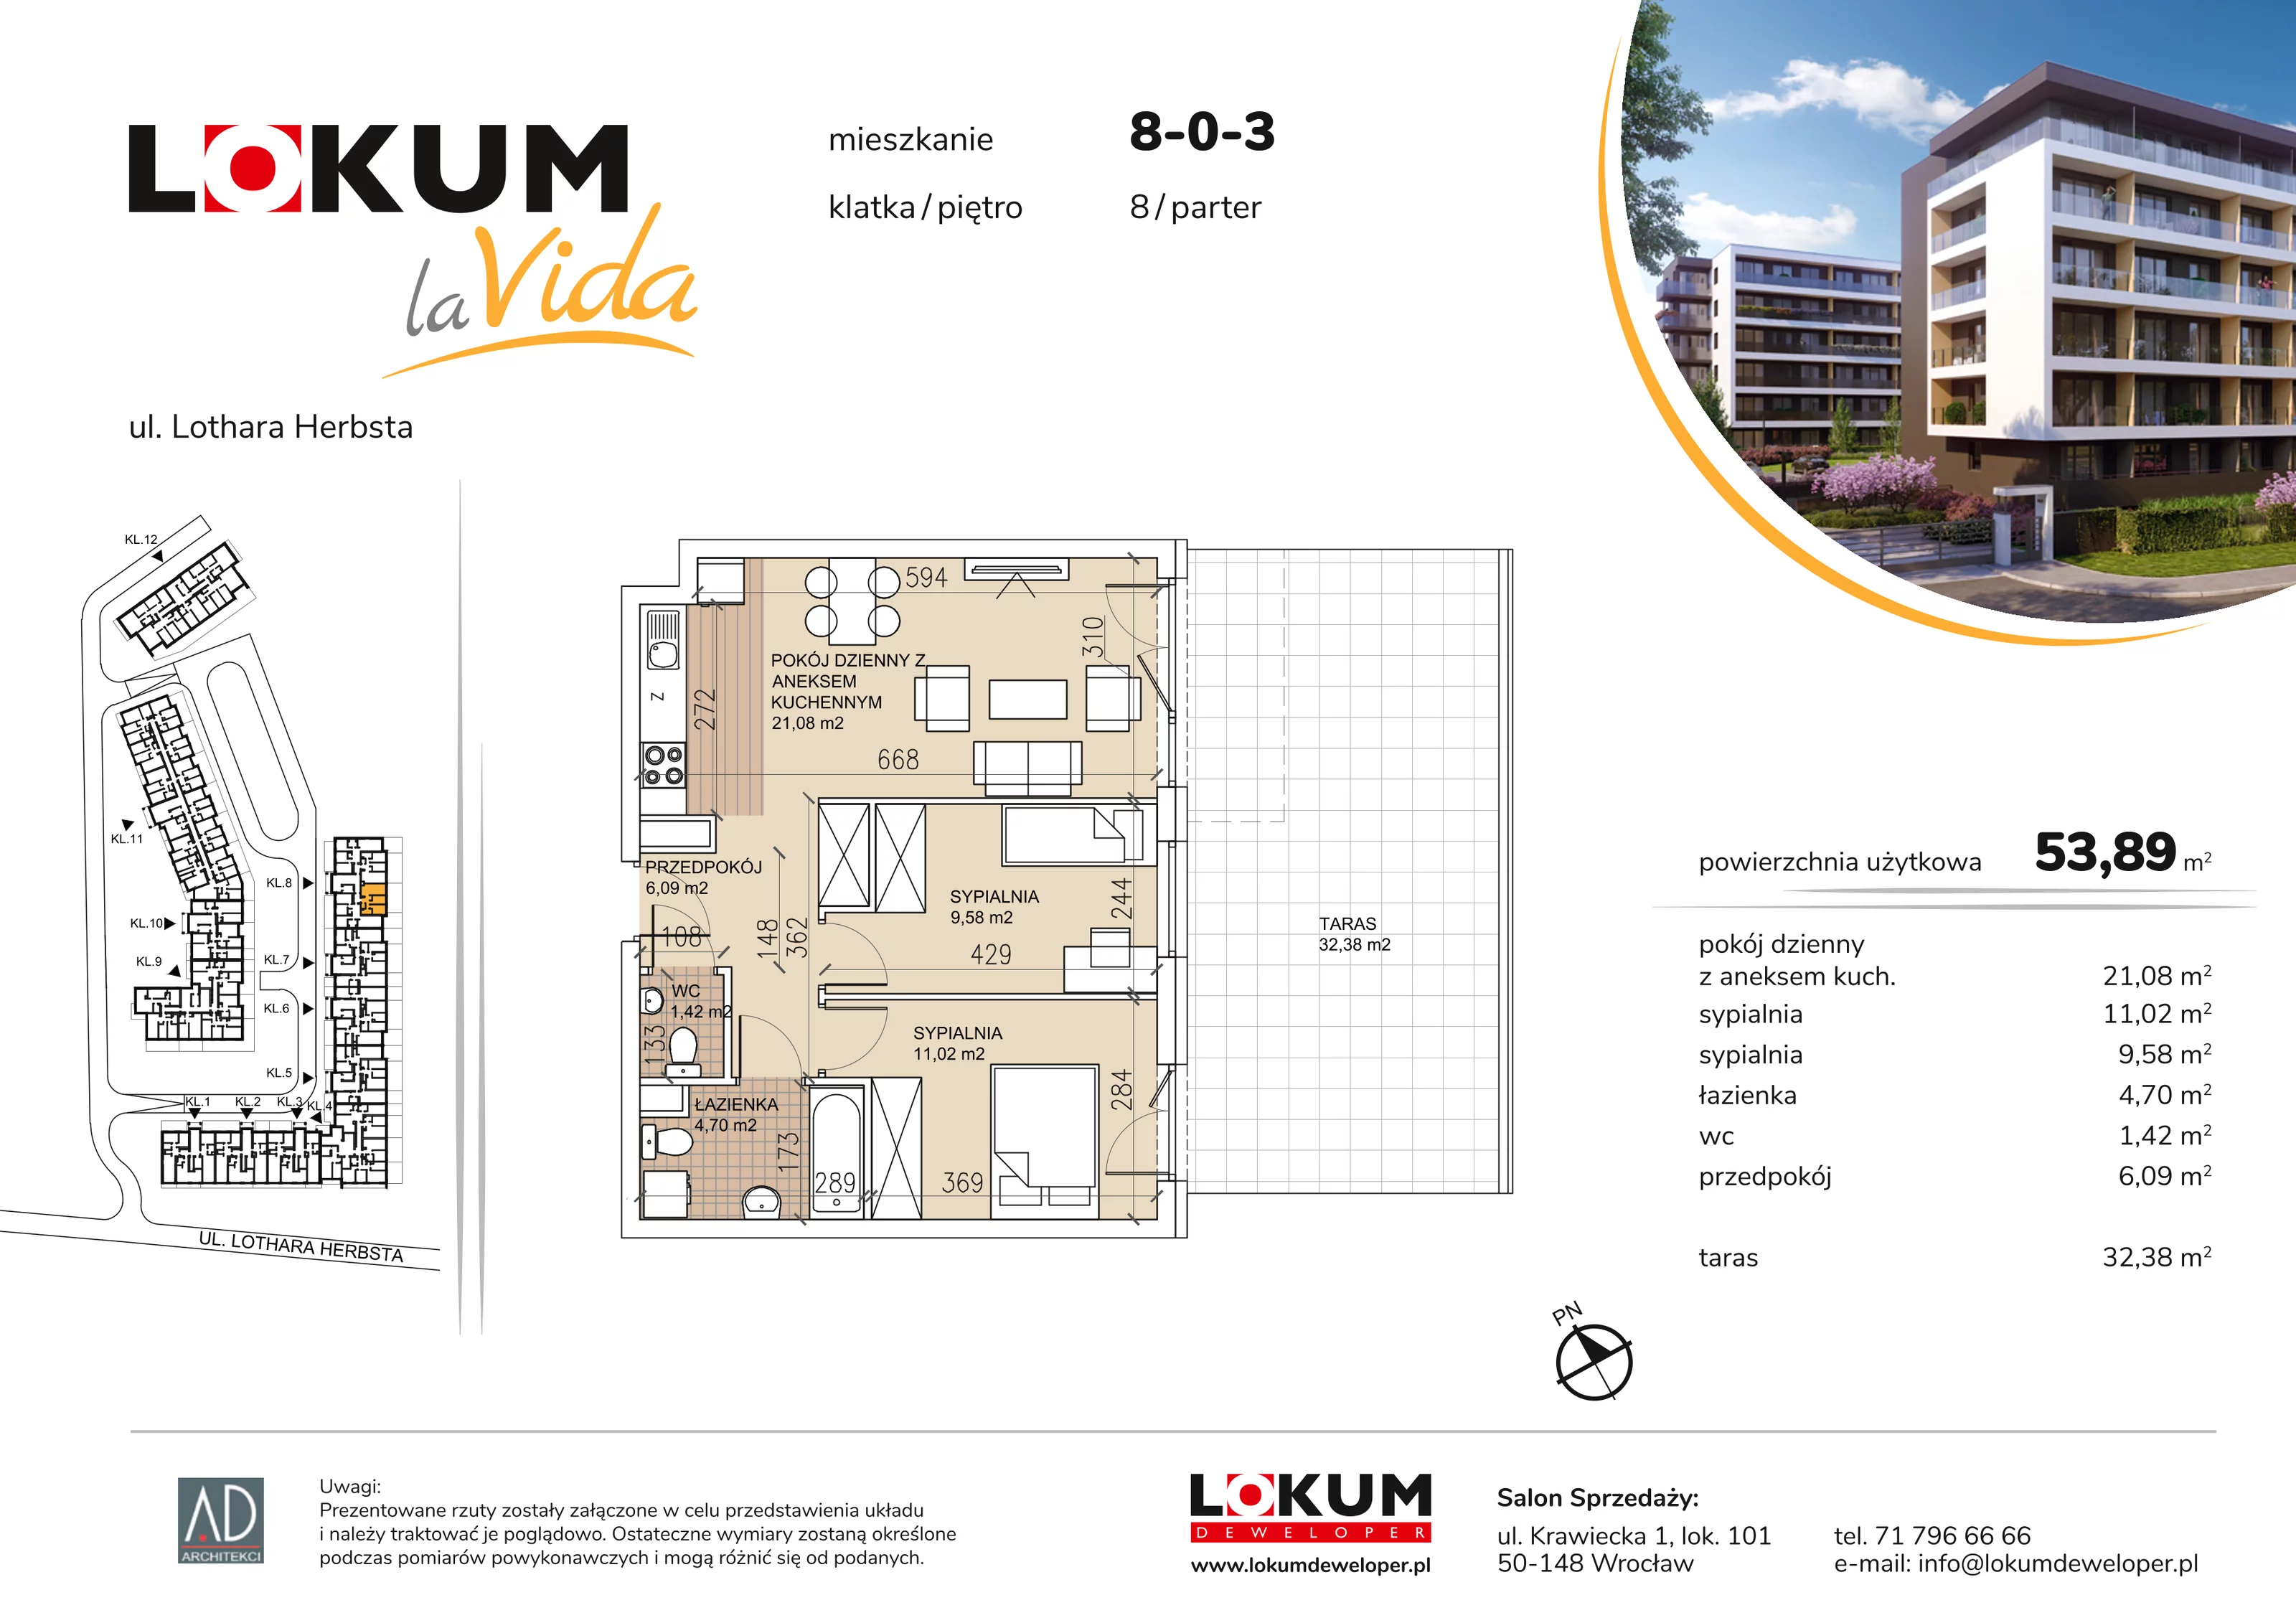 Mieszkanie 53,89 m², parter, oferta nr 8-0-3, Lokum la Vida, Wrocław, Sołtysowice, ul. Lothara Herbsta